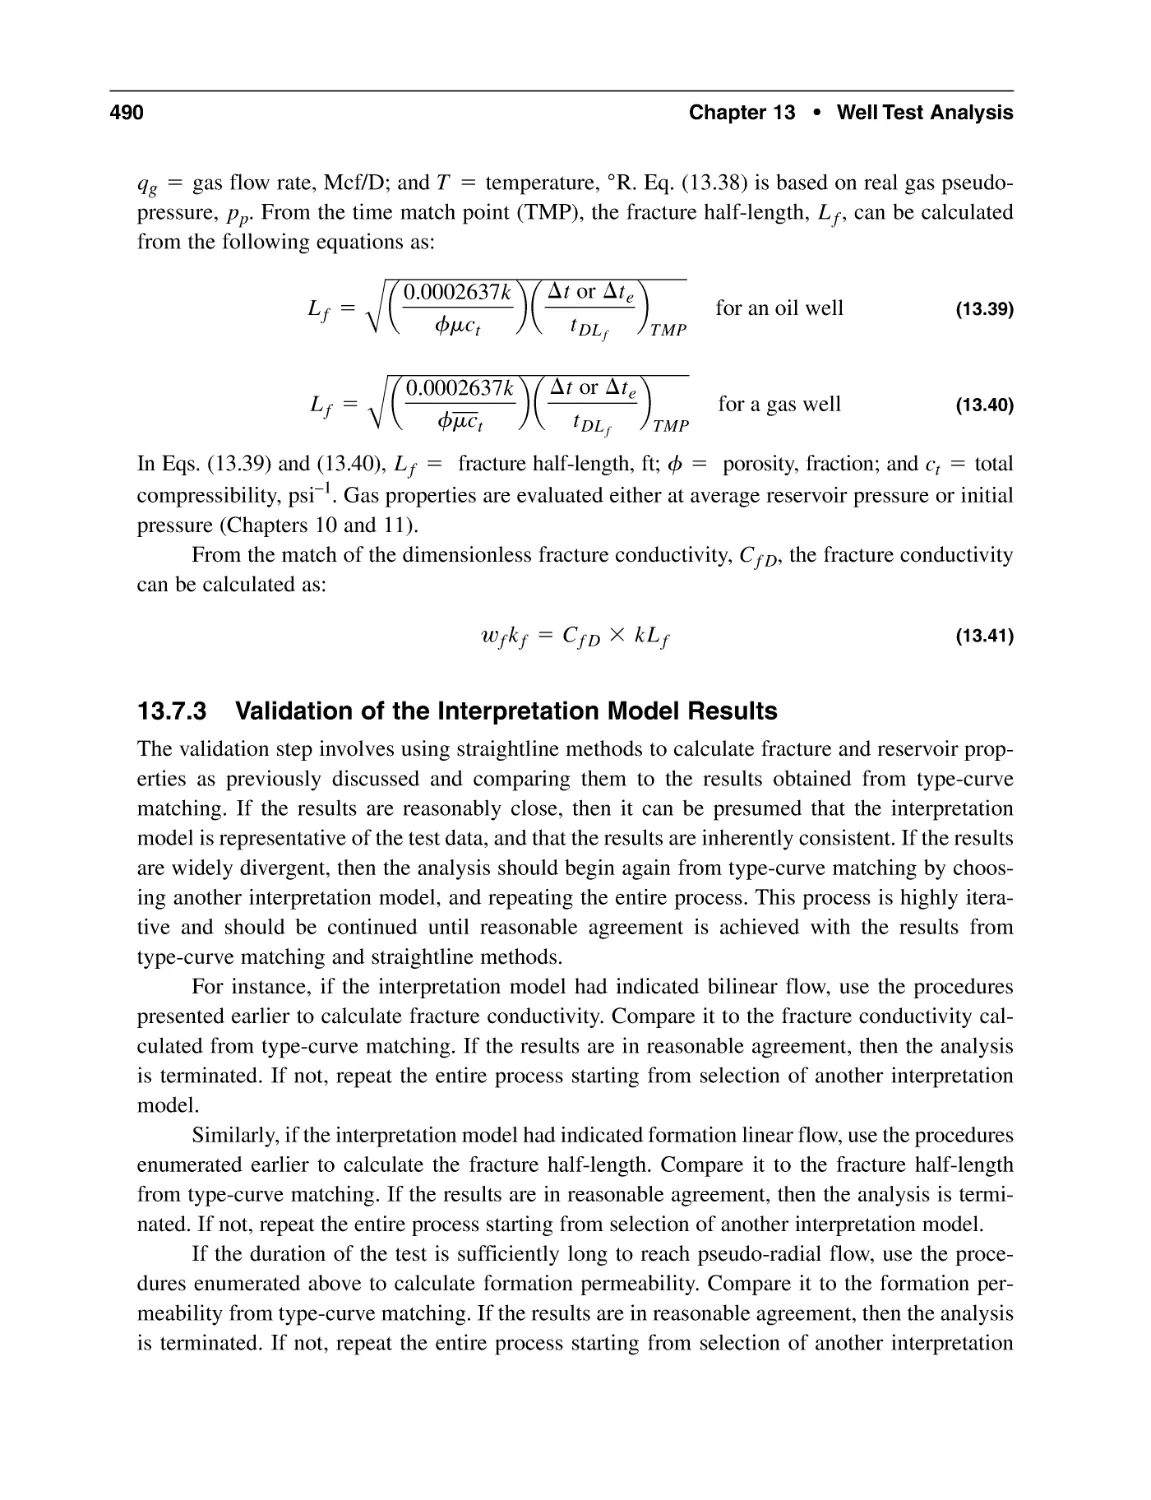 13.7.3 Validation of the Interpretation Model Results